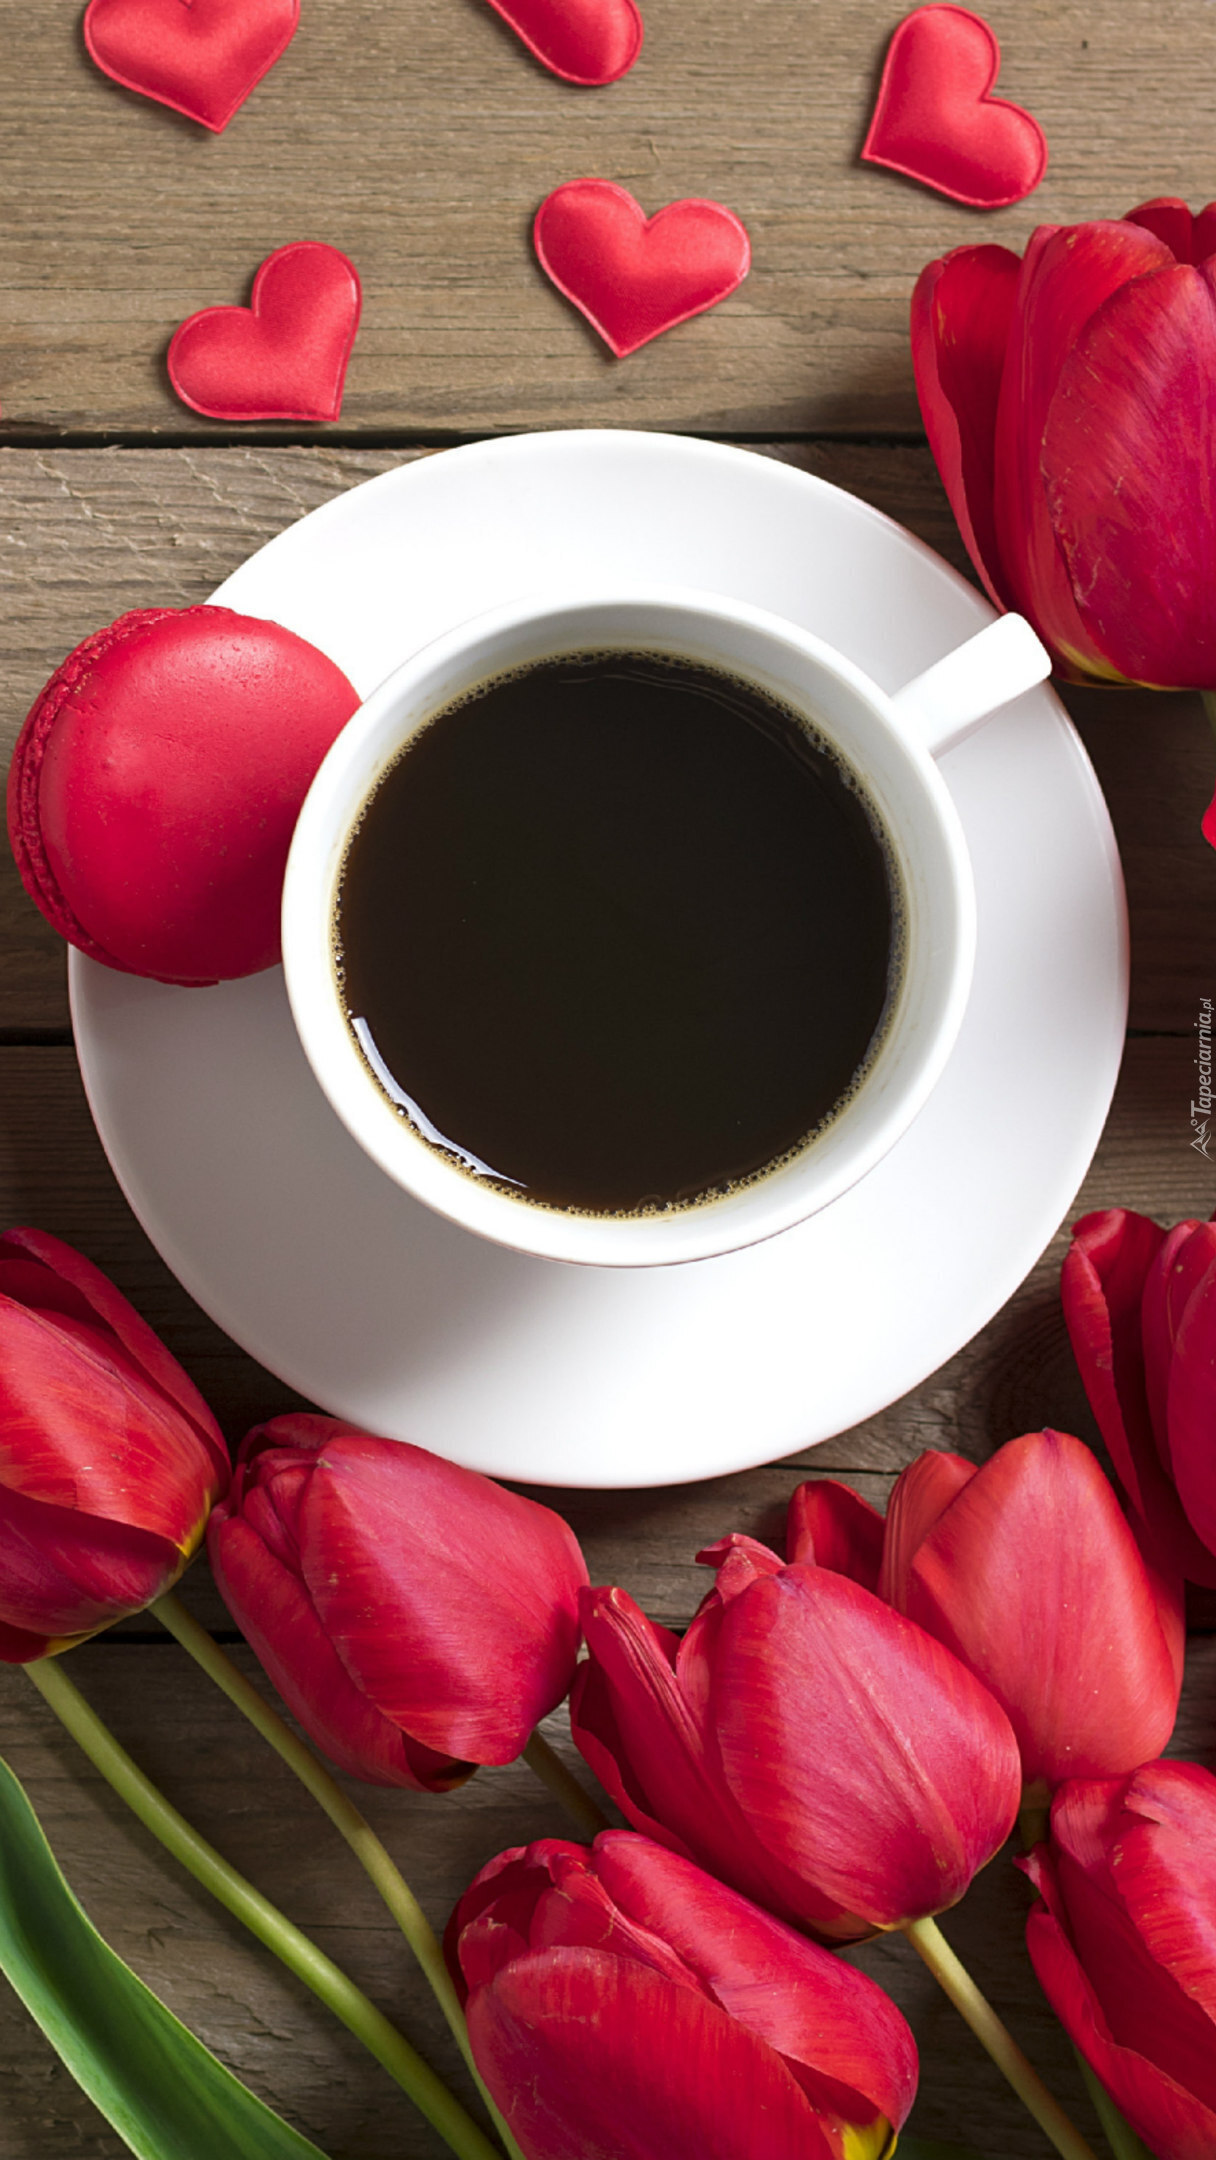 Czerwone tulipany przy filiżance kawy